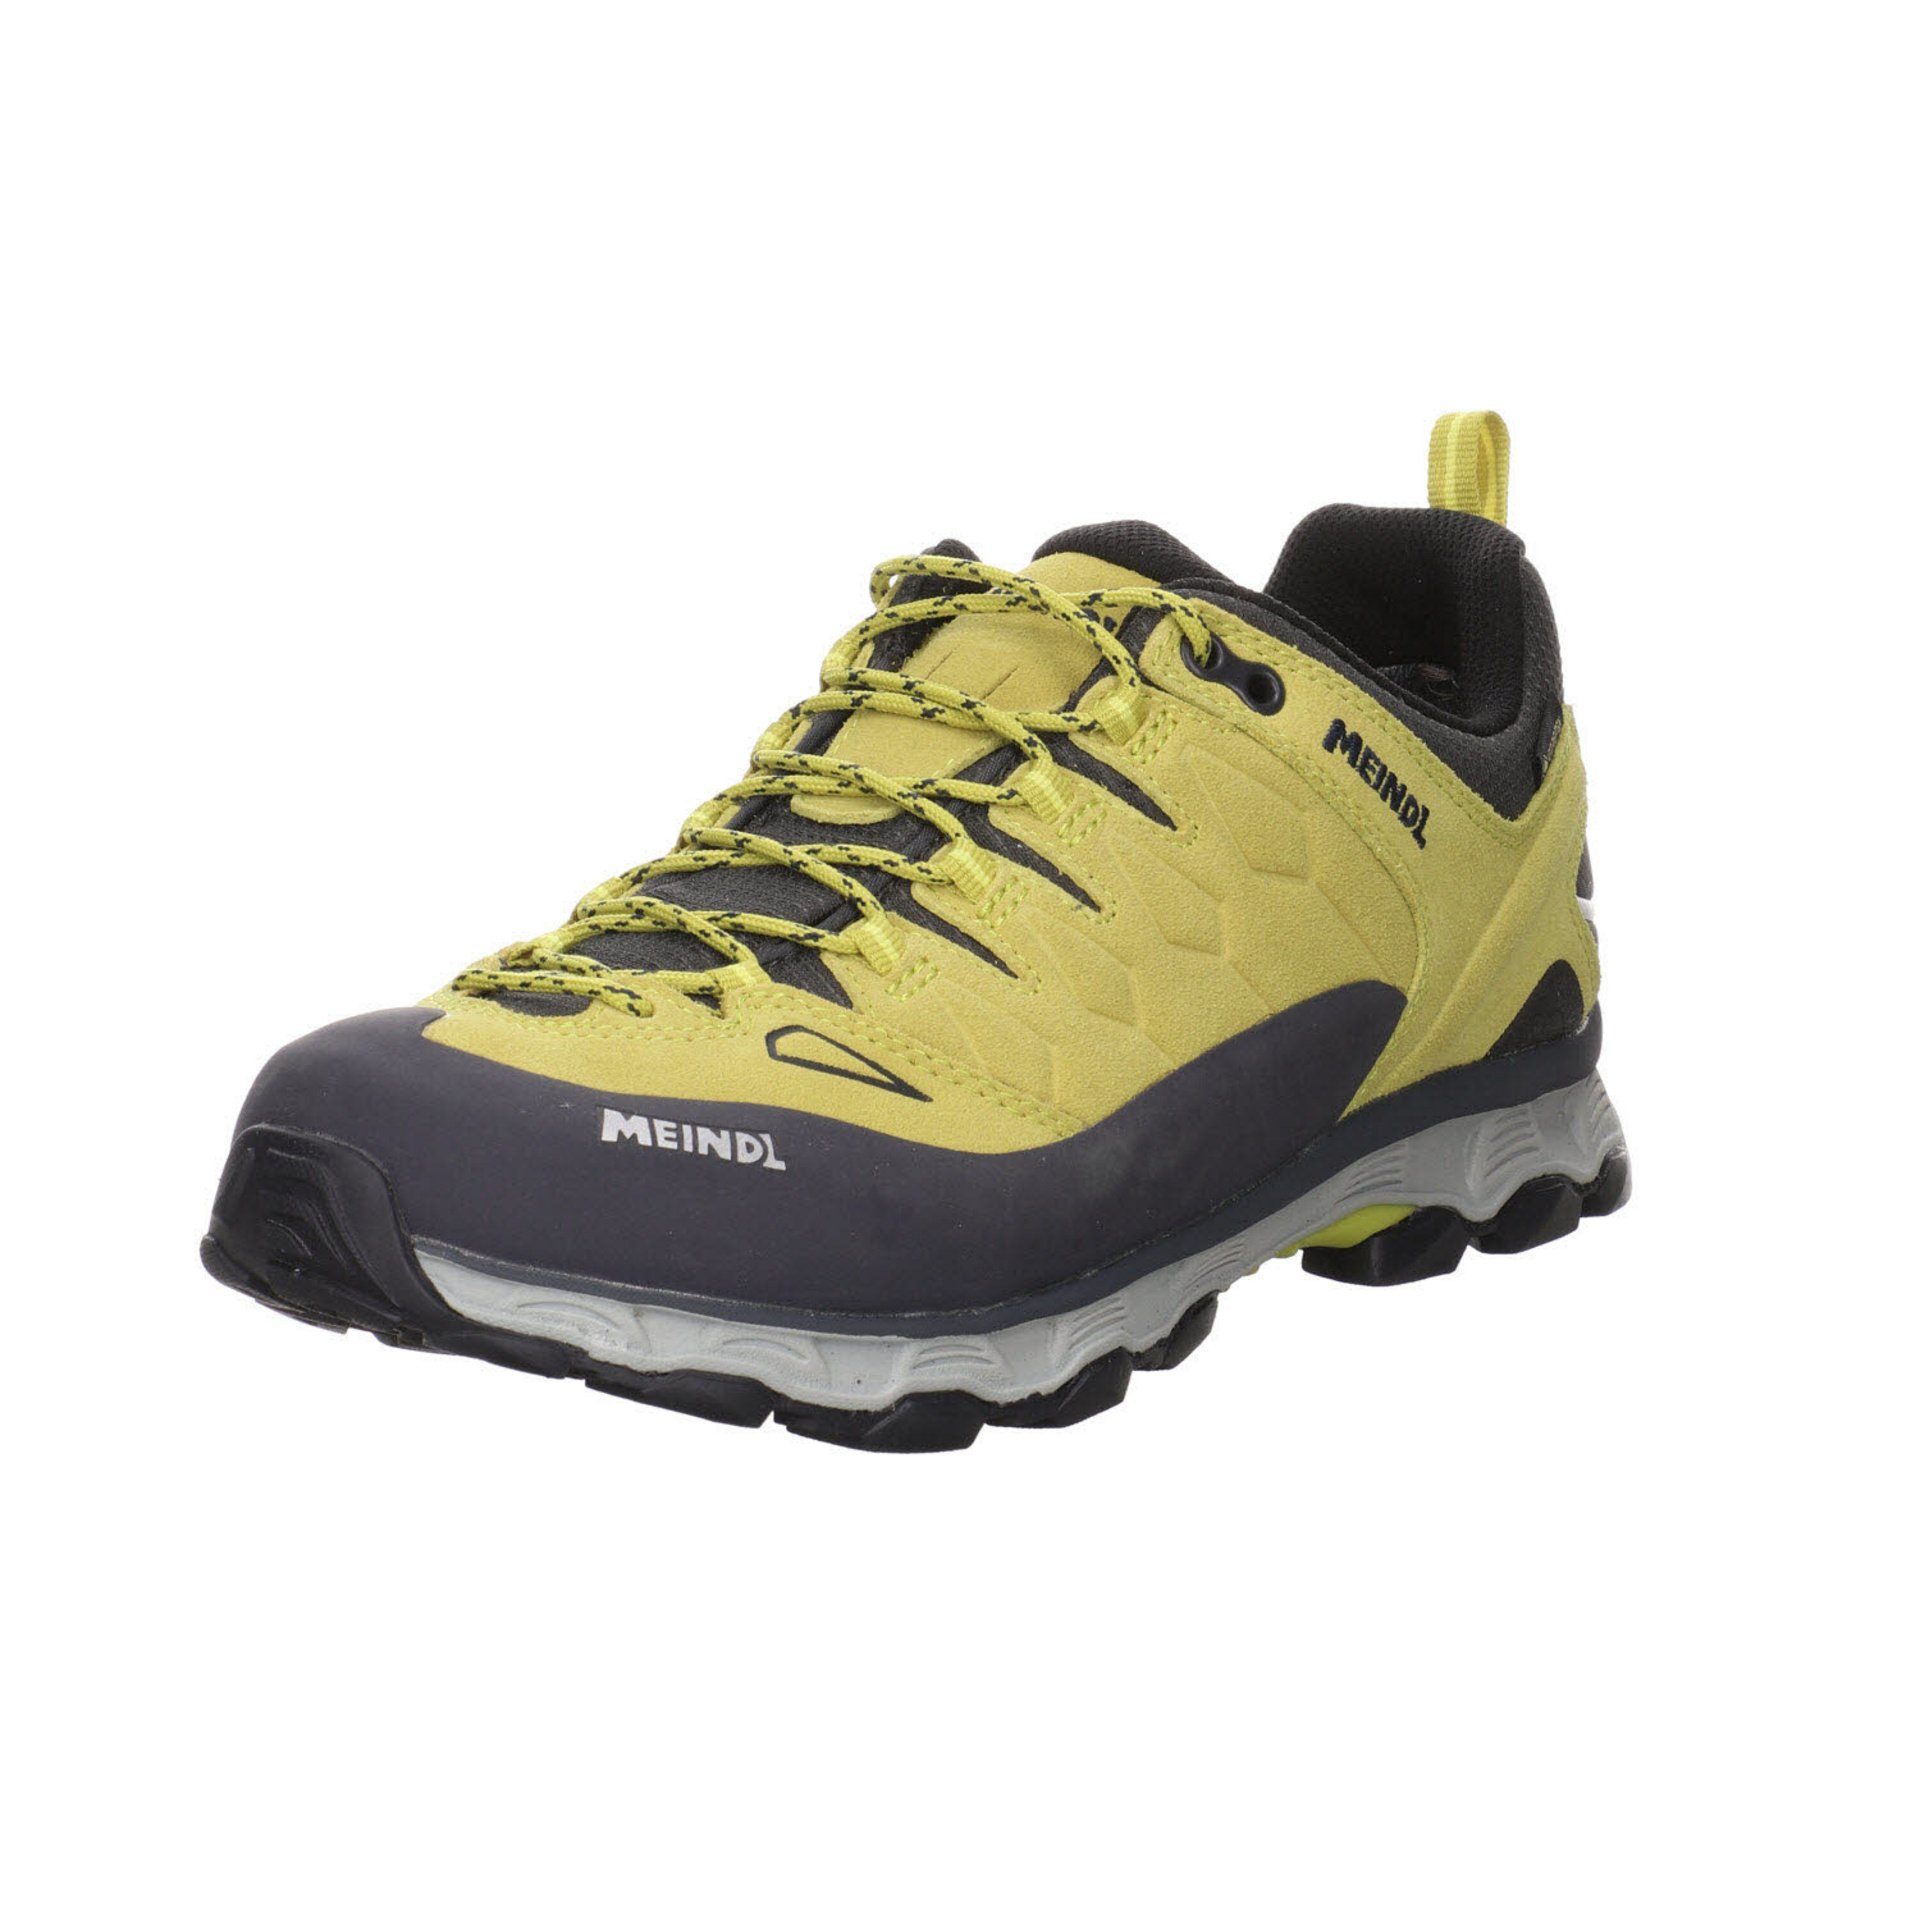 Meindl Herren Outdoor Schuhe Lite Trail GTX Outdoorschuh Outdoorschuh Leder-/Textilkombination gelb sonst Kombi